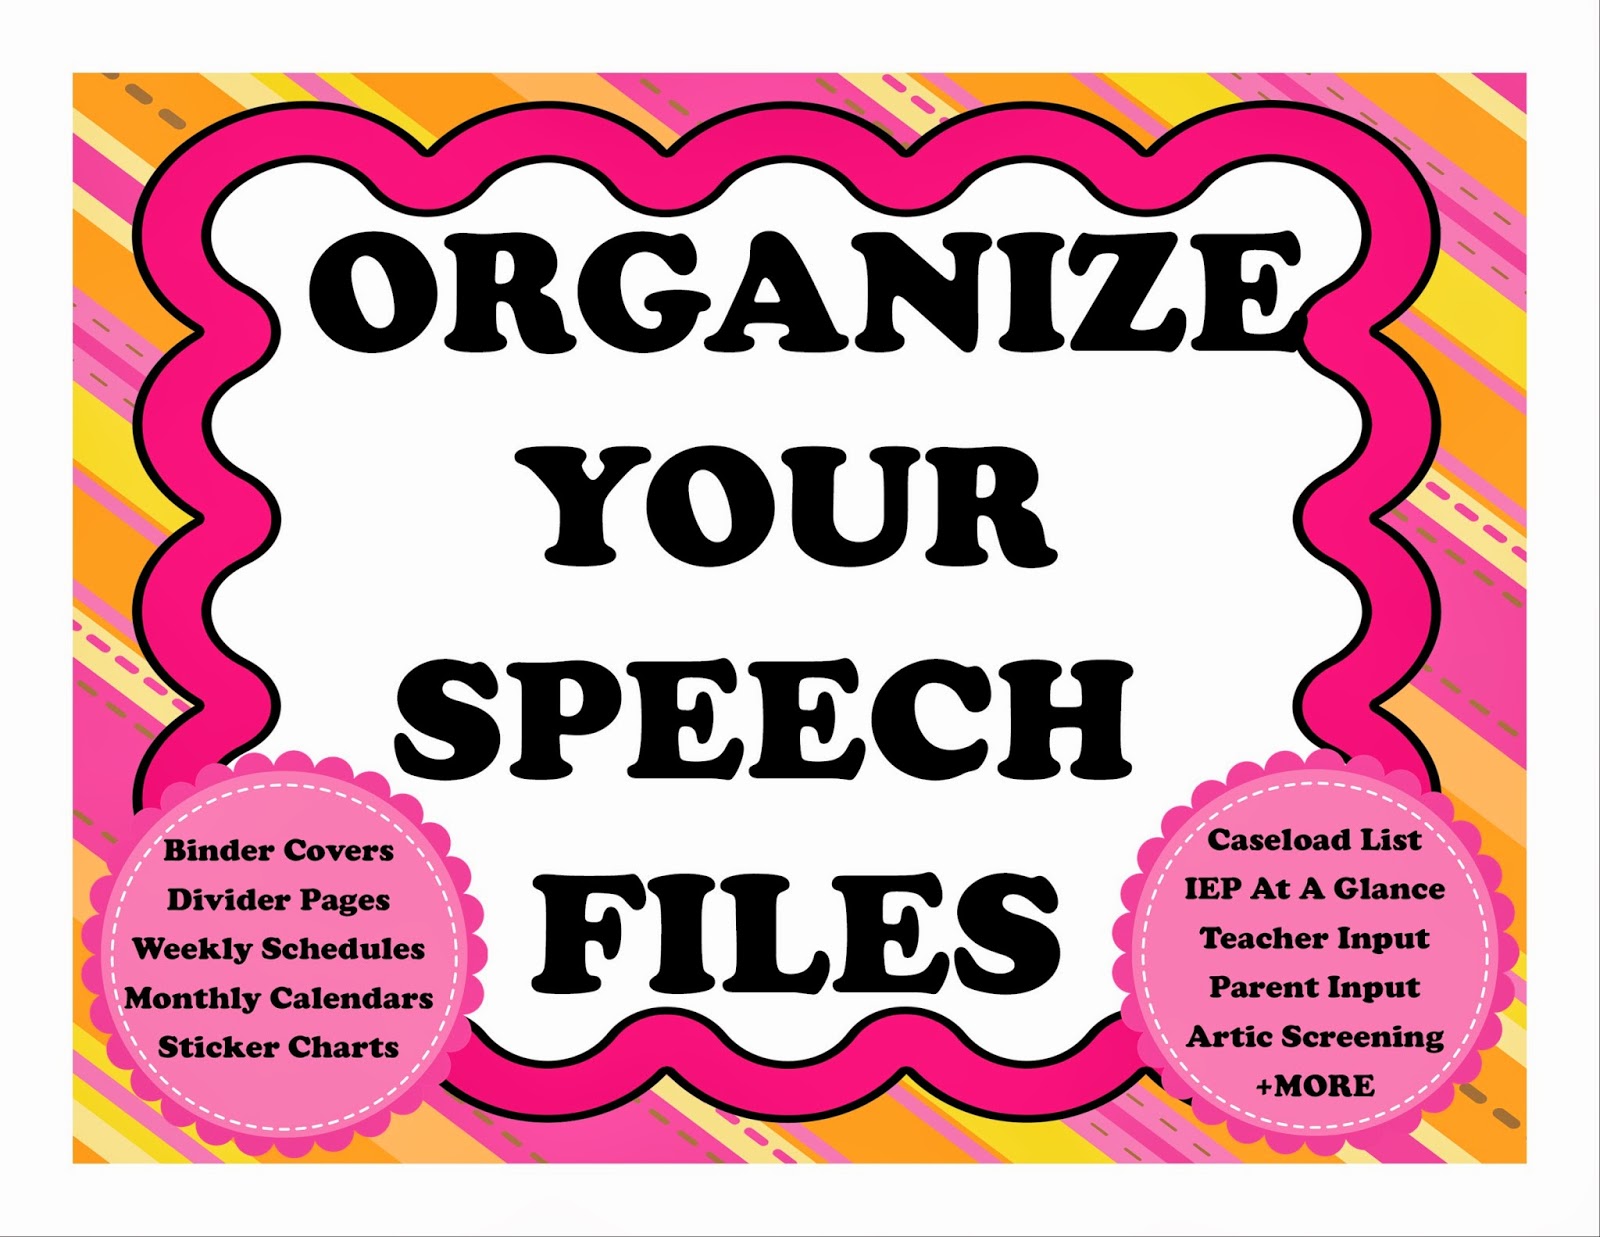 https://www.teacherspayteachers.com/Product/Organize-Your-Speech-Files-1676189